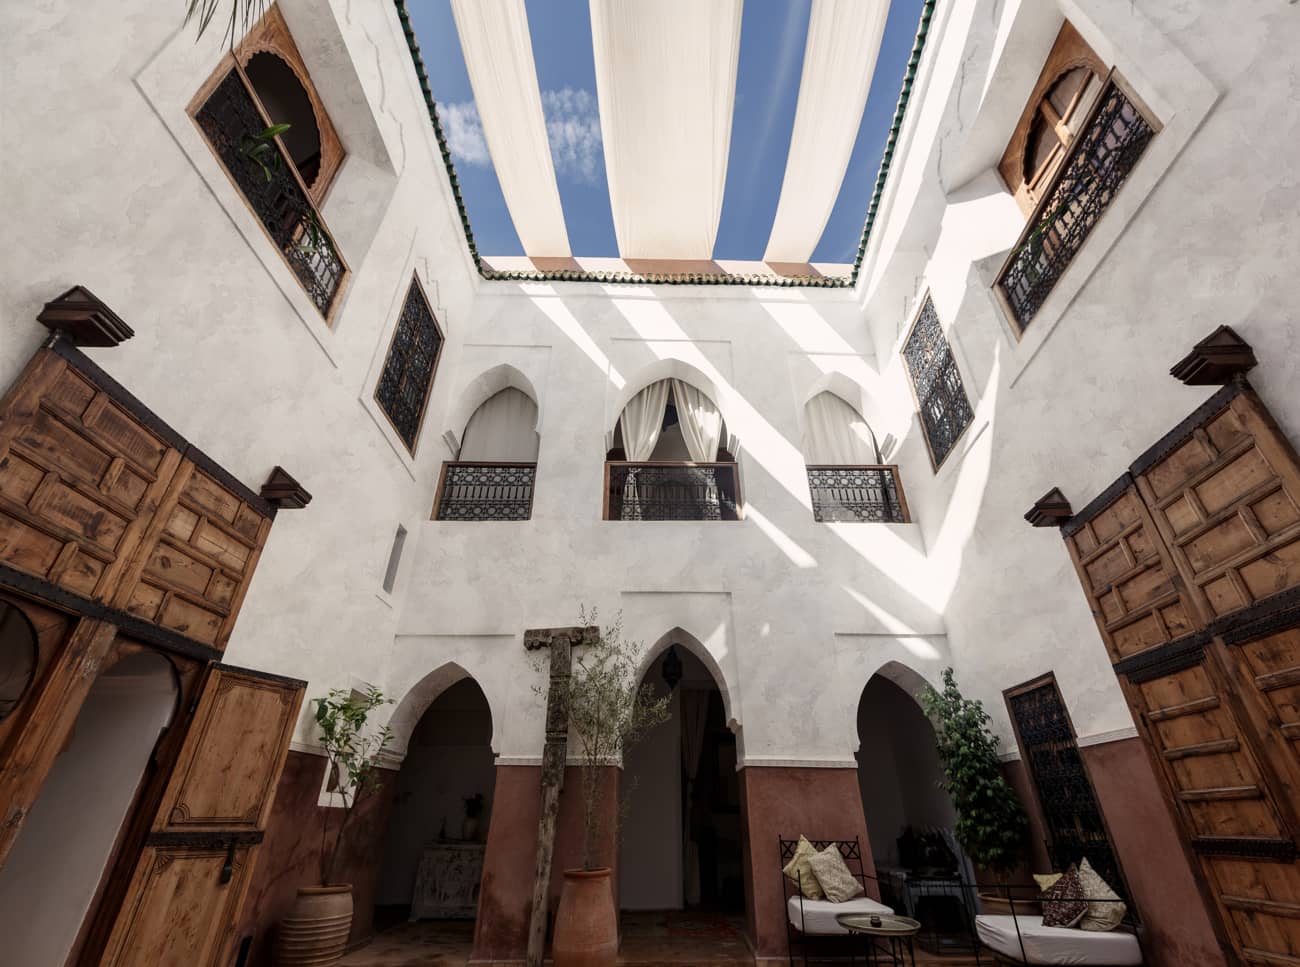 tadelakt på veggene i et marokkansk-inspirert hjem